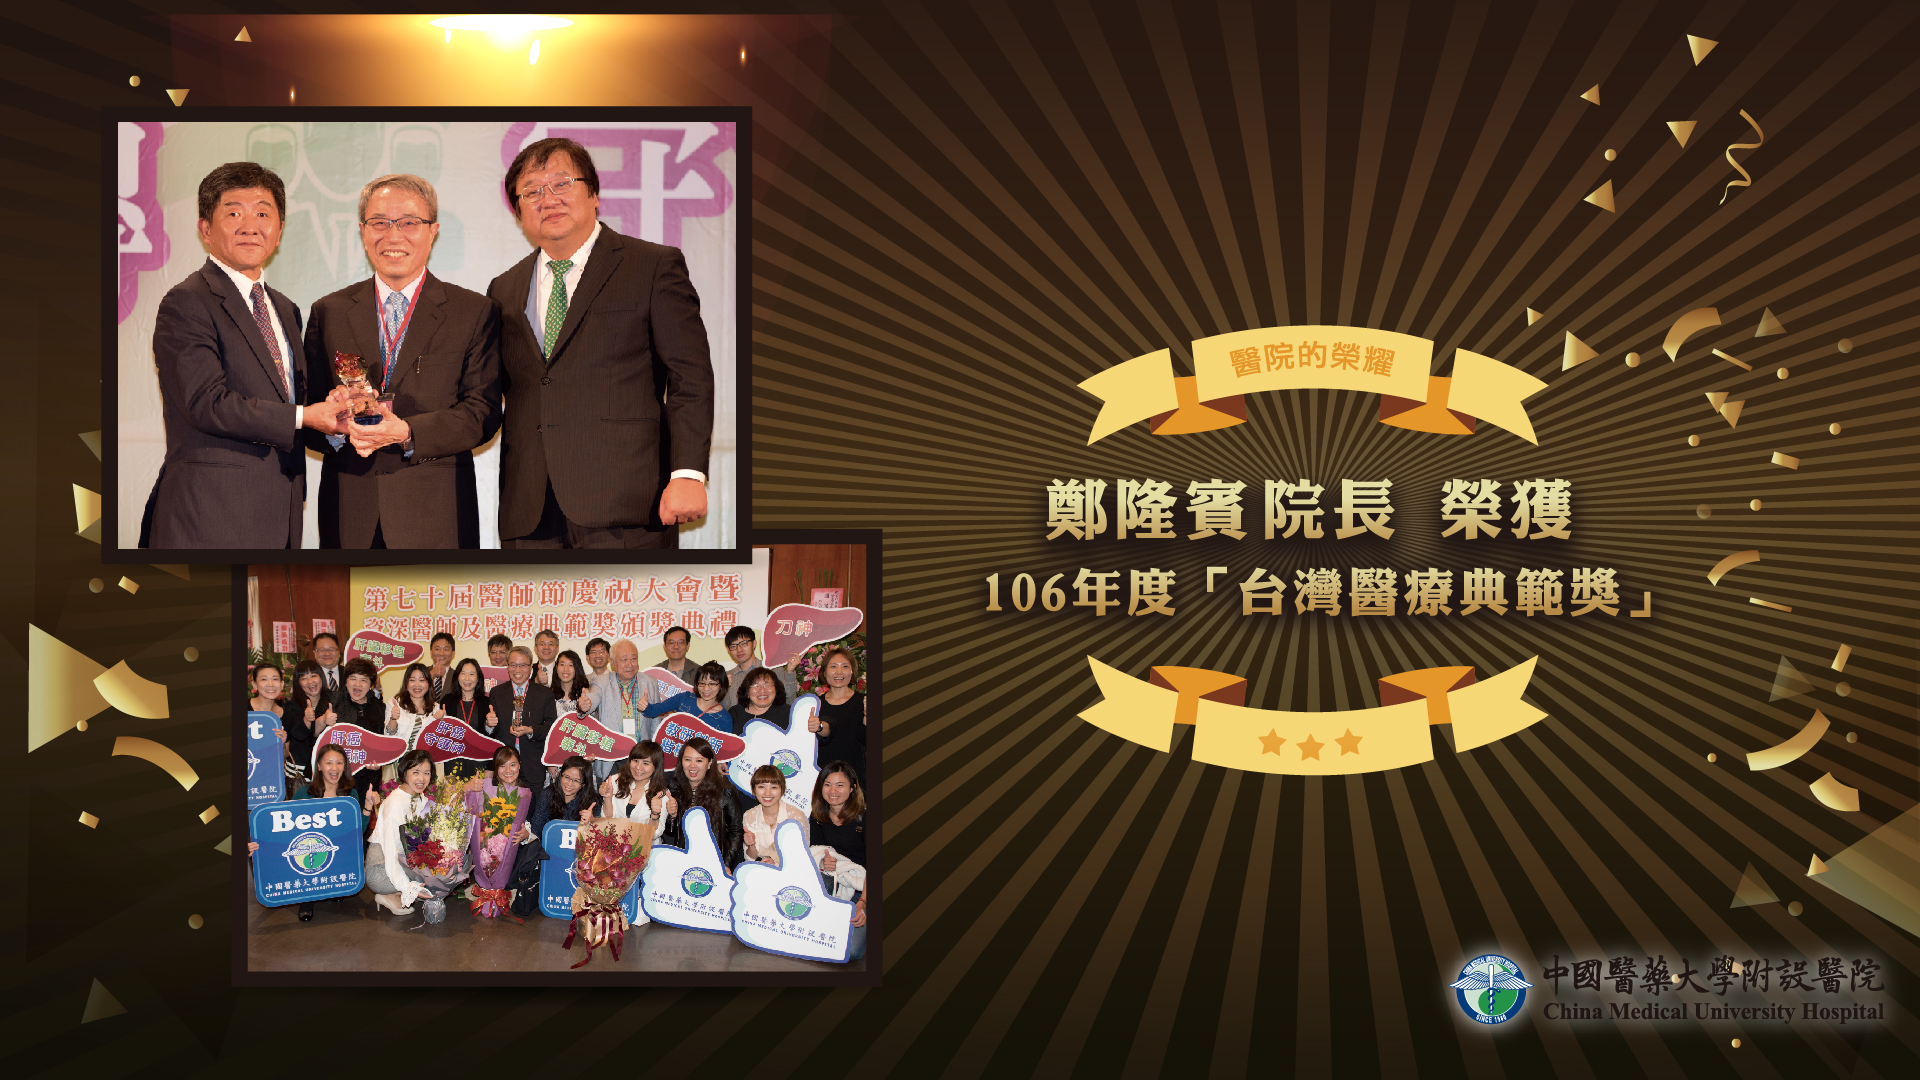 鄭隆賓院長榮獲106年度「台灣醫療典範獎」